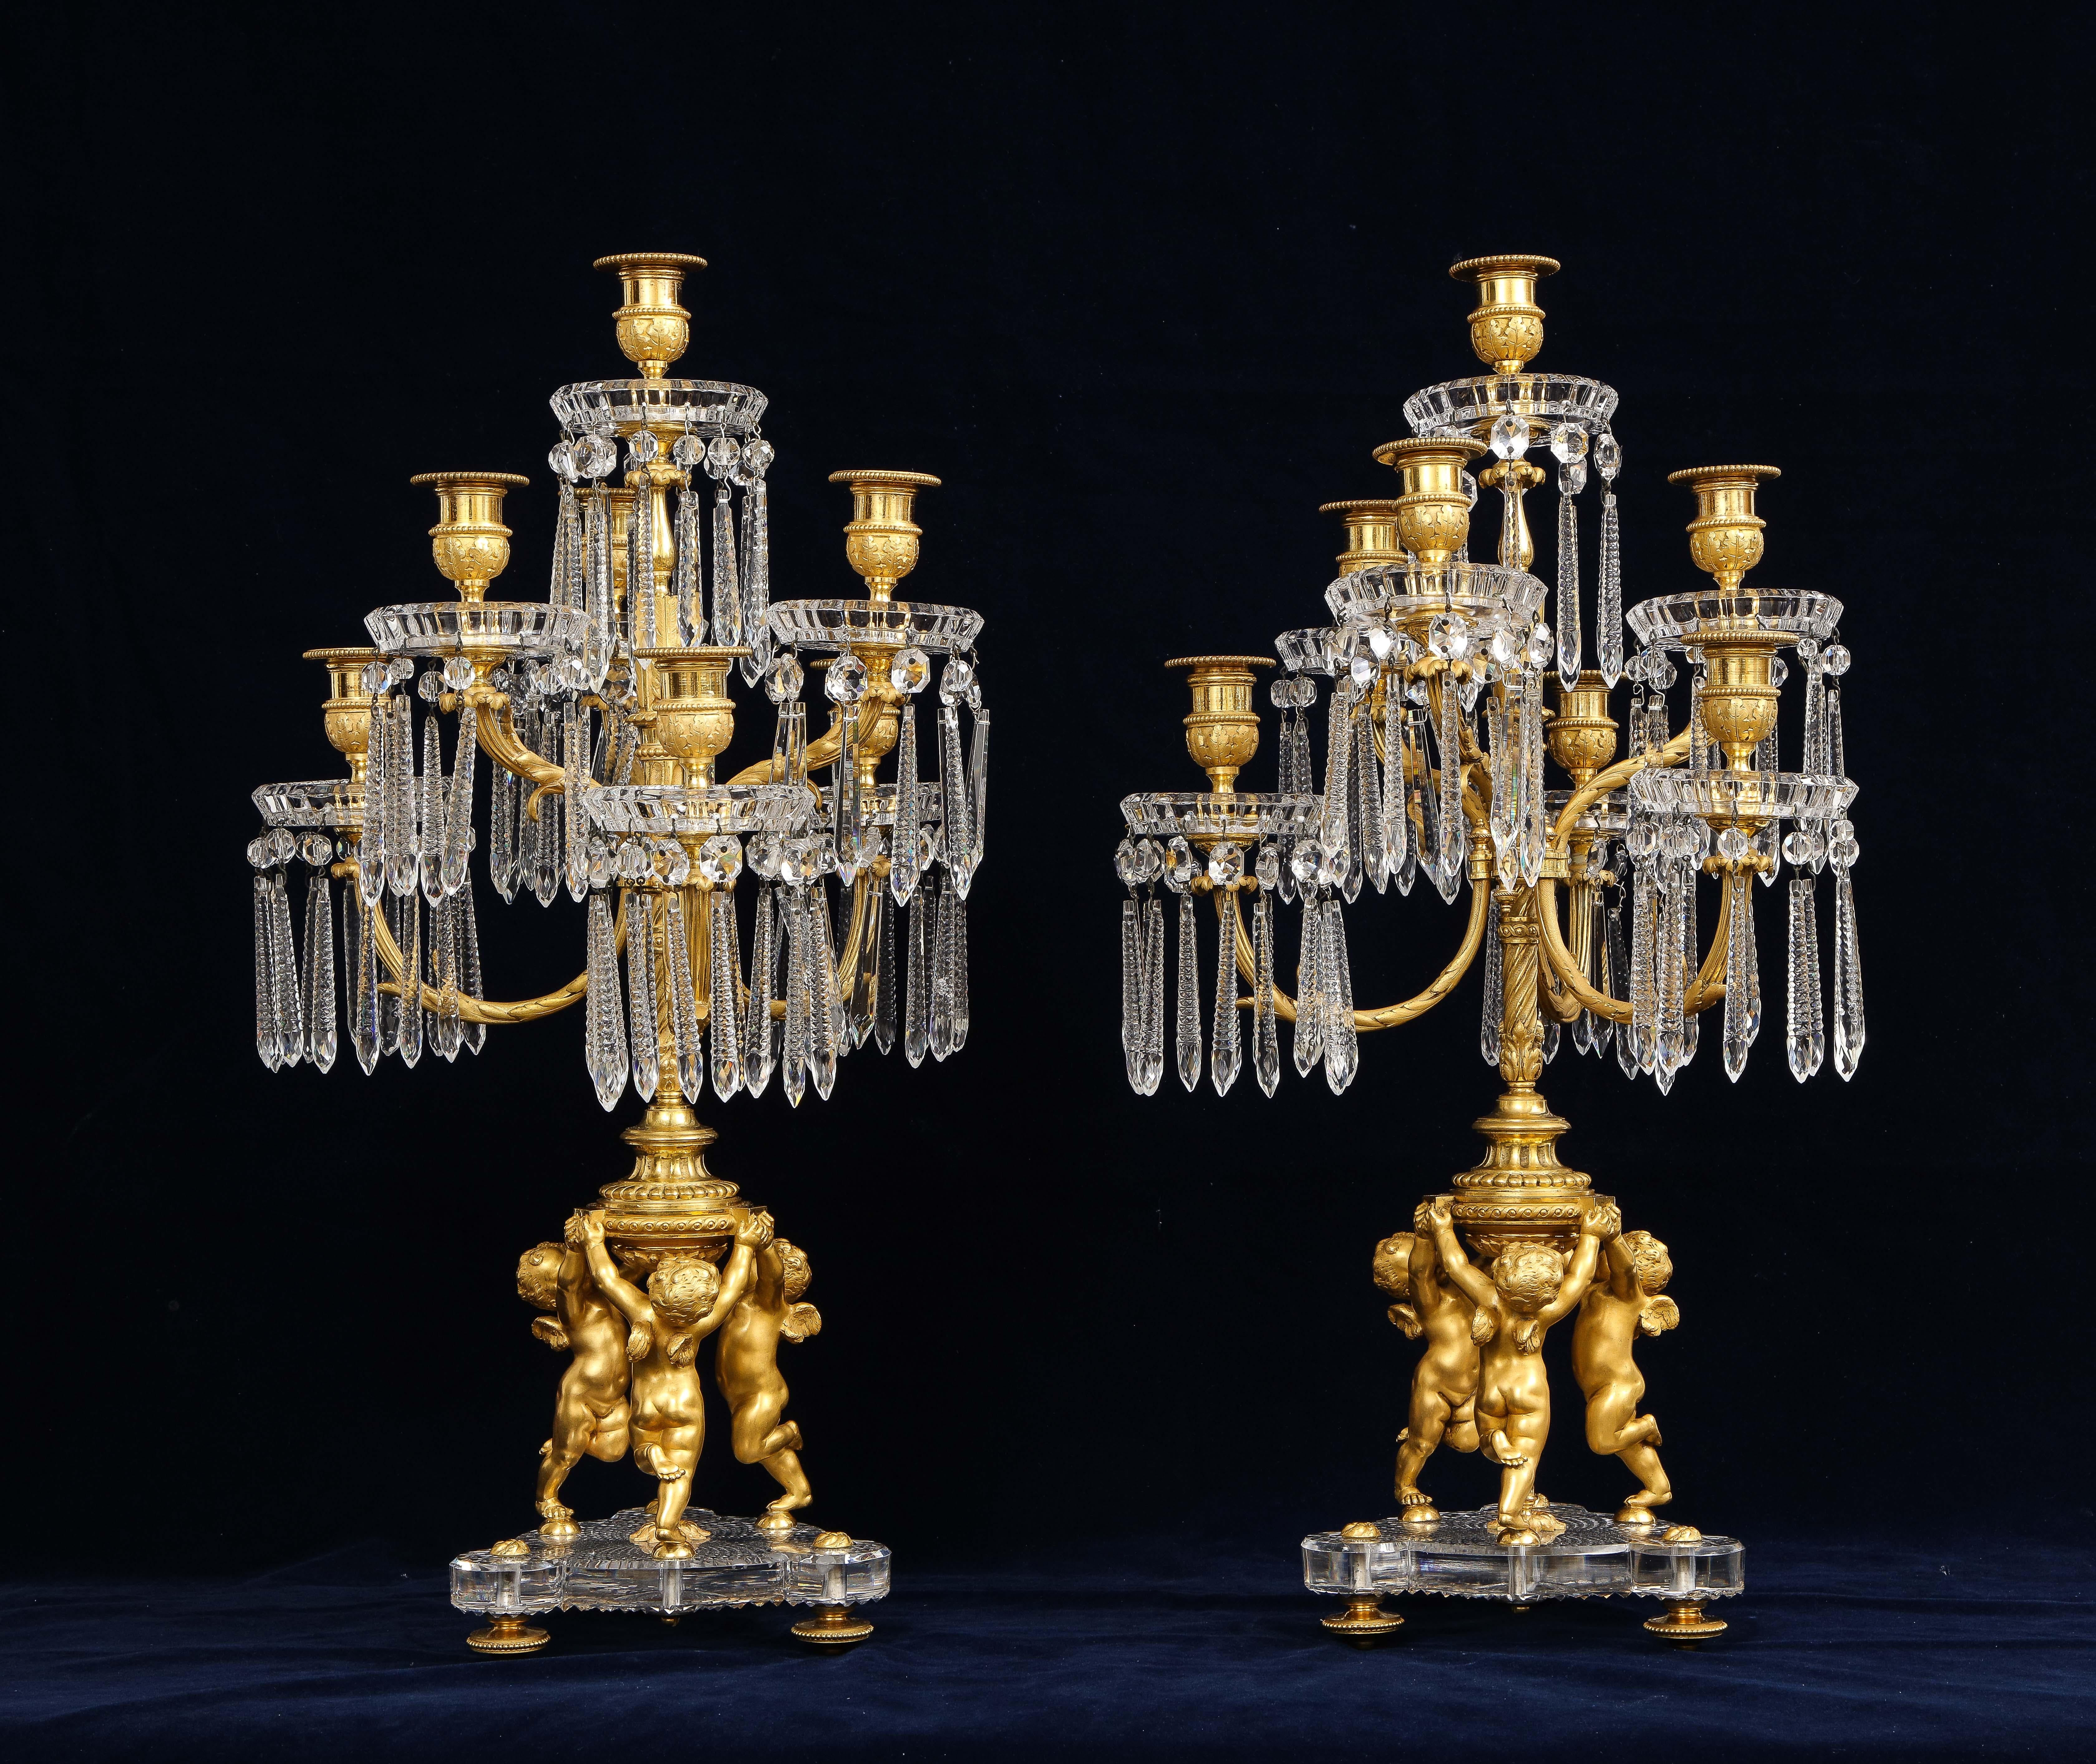 Louis XVI Paire de candélabres français du 19ème siècle à 7 bras en bronze doré et cristal signés Baccarat